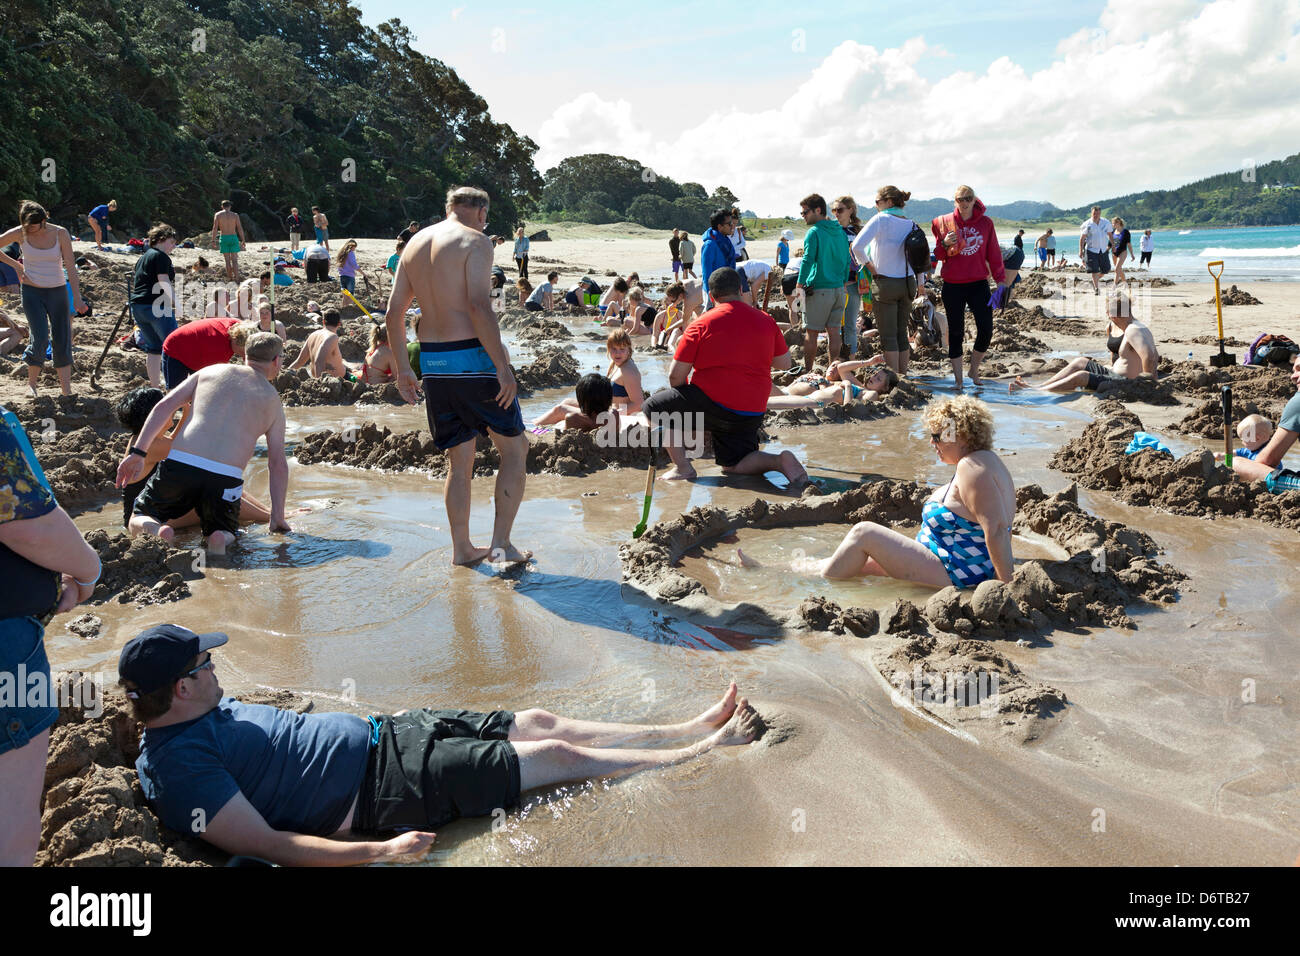 L'eau chaude,plage,Coromandel près de Hahei, île du Nord, Nouvelle-Zélande Banque D'Images